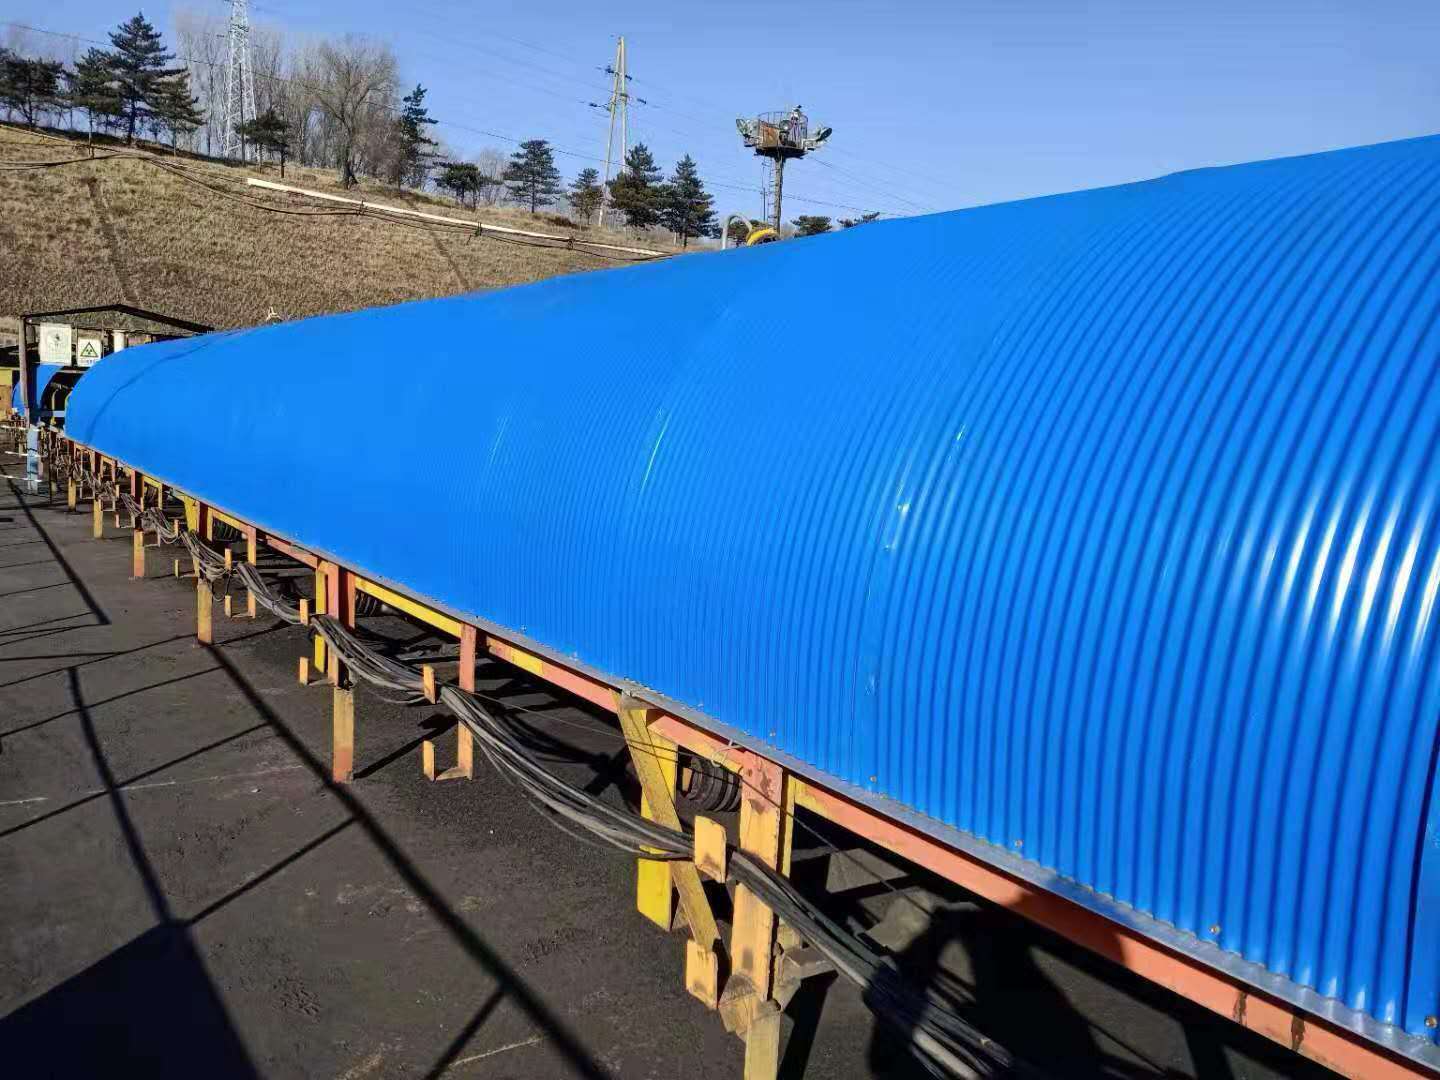 输送带防尘罩与防雨罩-彩钢瓦雨棚防雨罩-河北蓝天彩涂钢板厂家